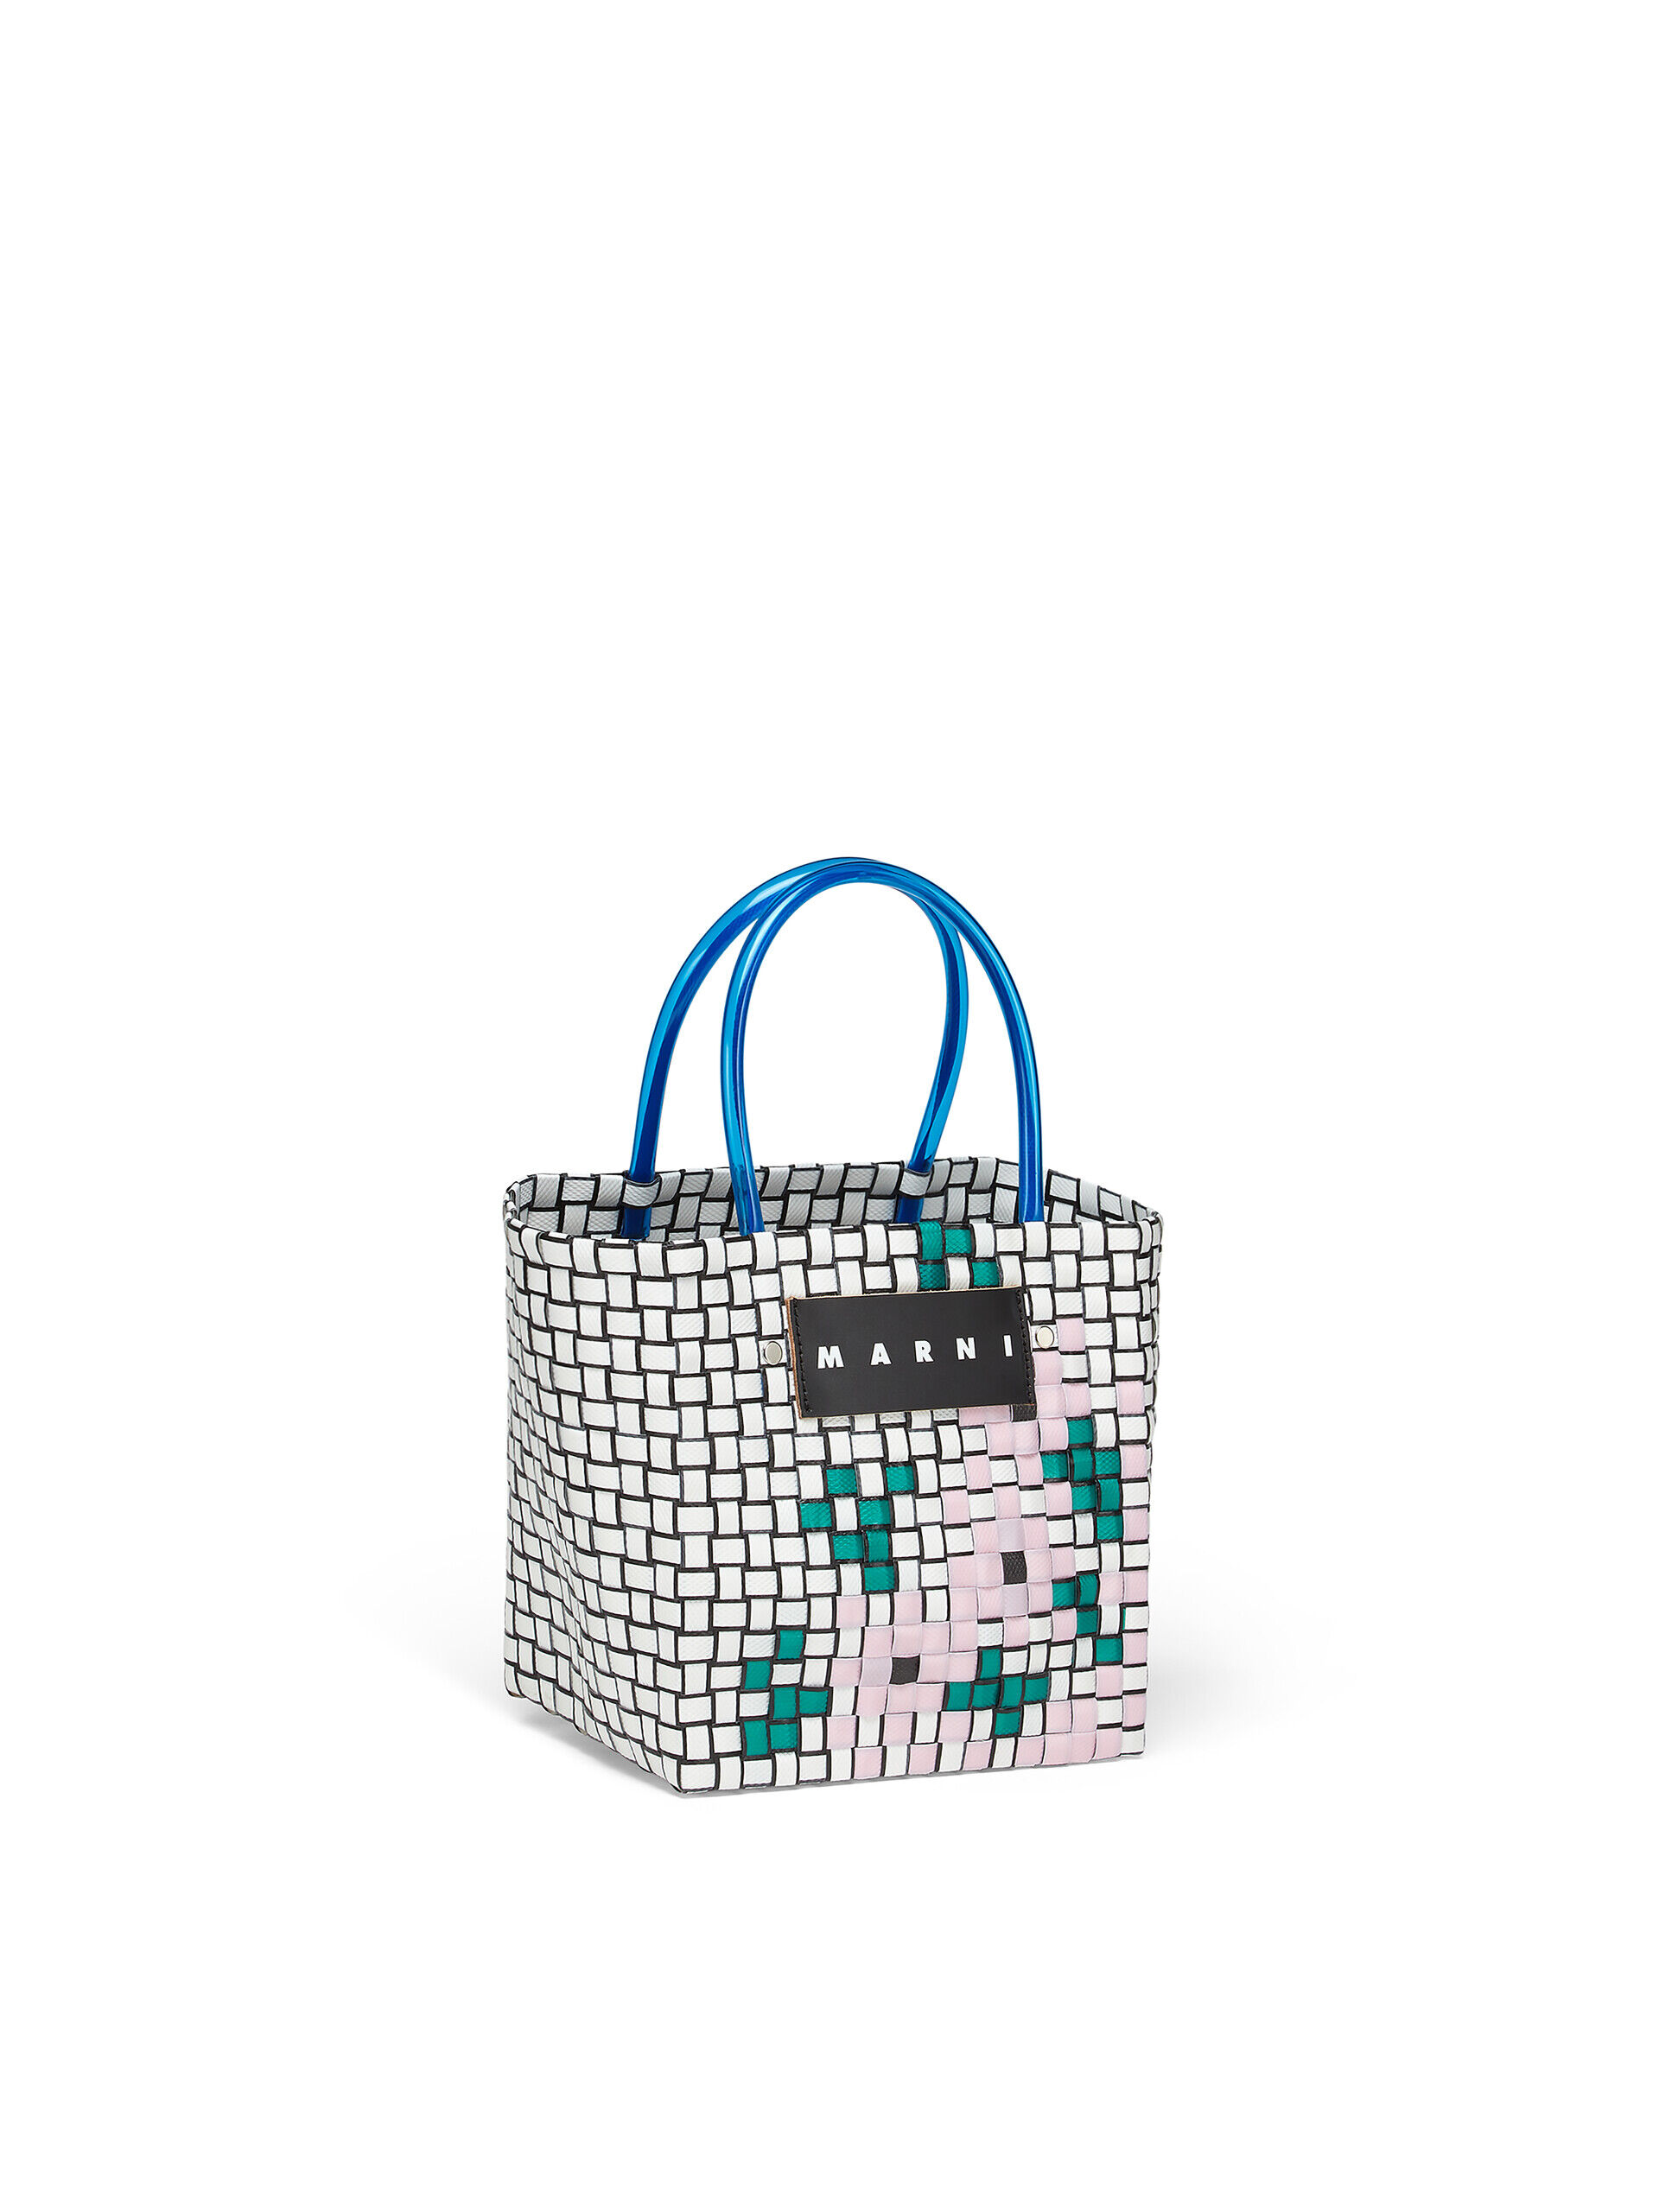 MARNI MARKET MINI FLOWER BASKET shopping bag in white